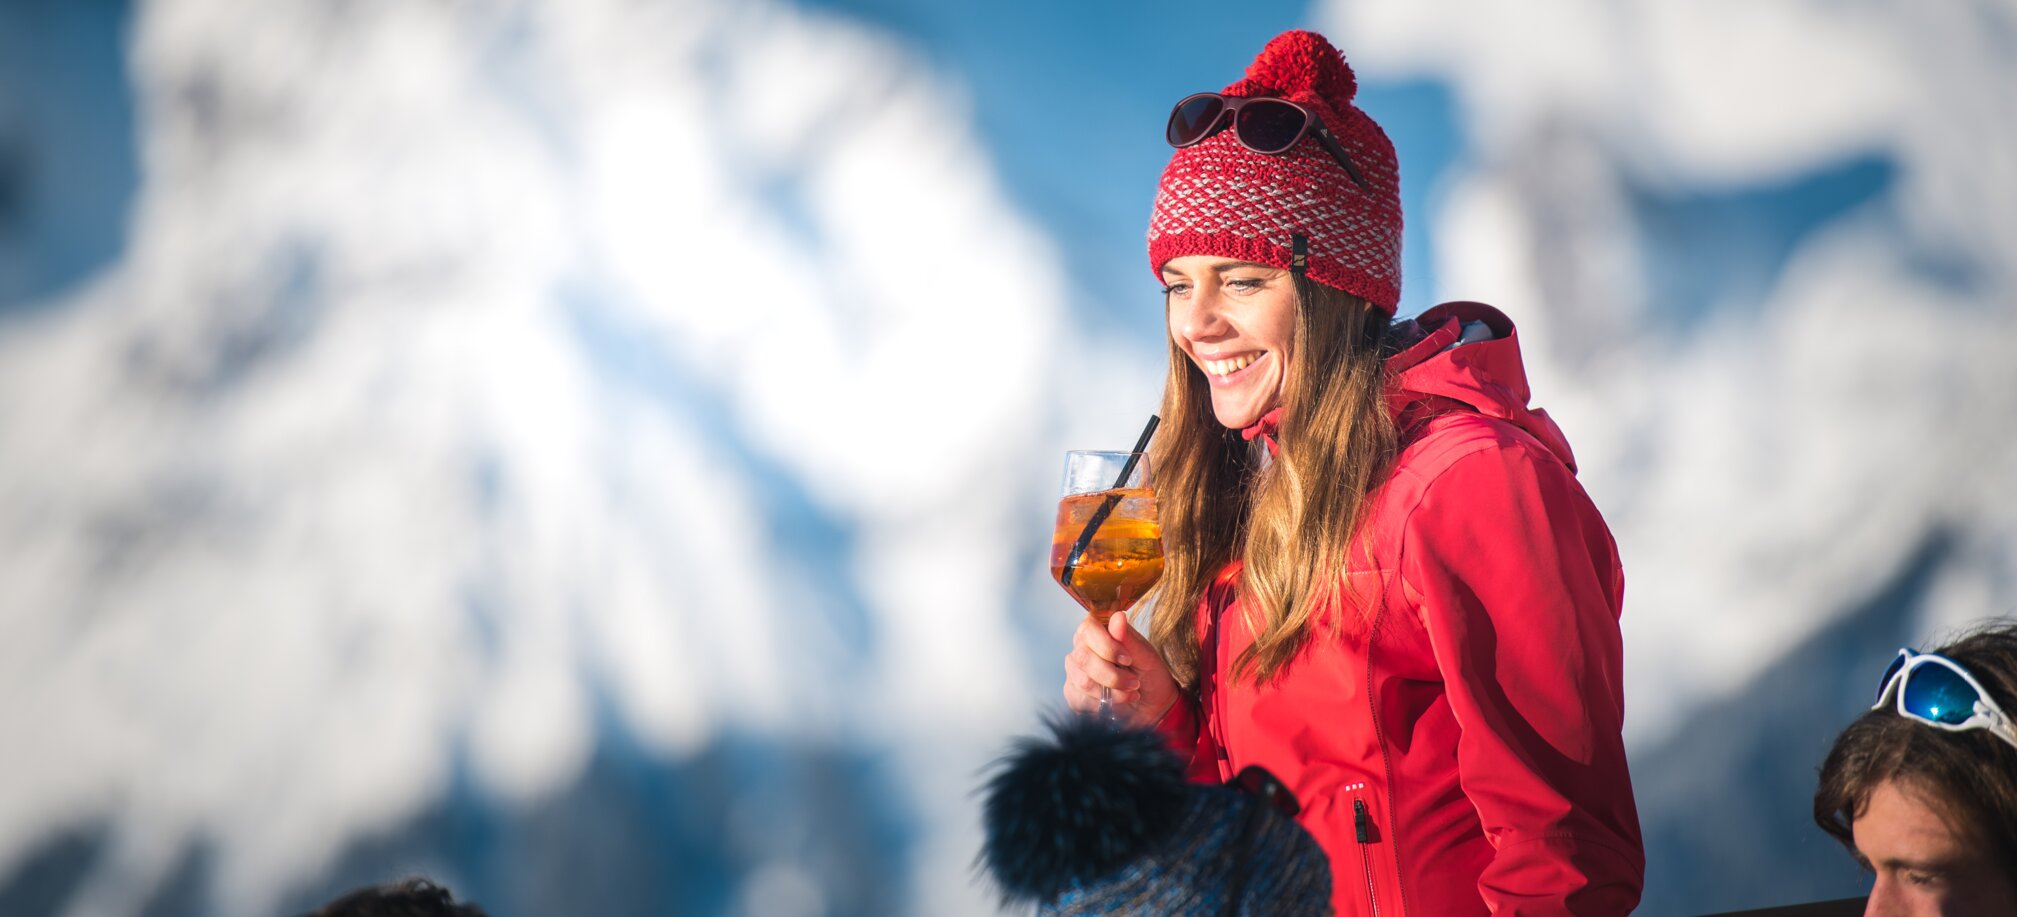 Gourmet Ski- und Weingenuss auf den Hütten in Ski amadé